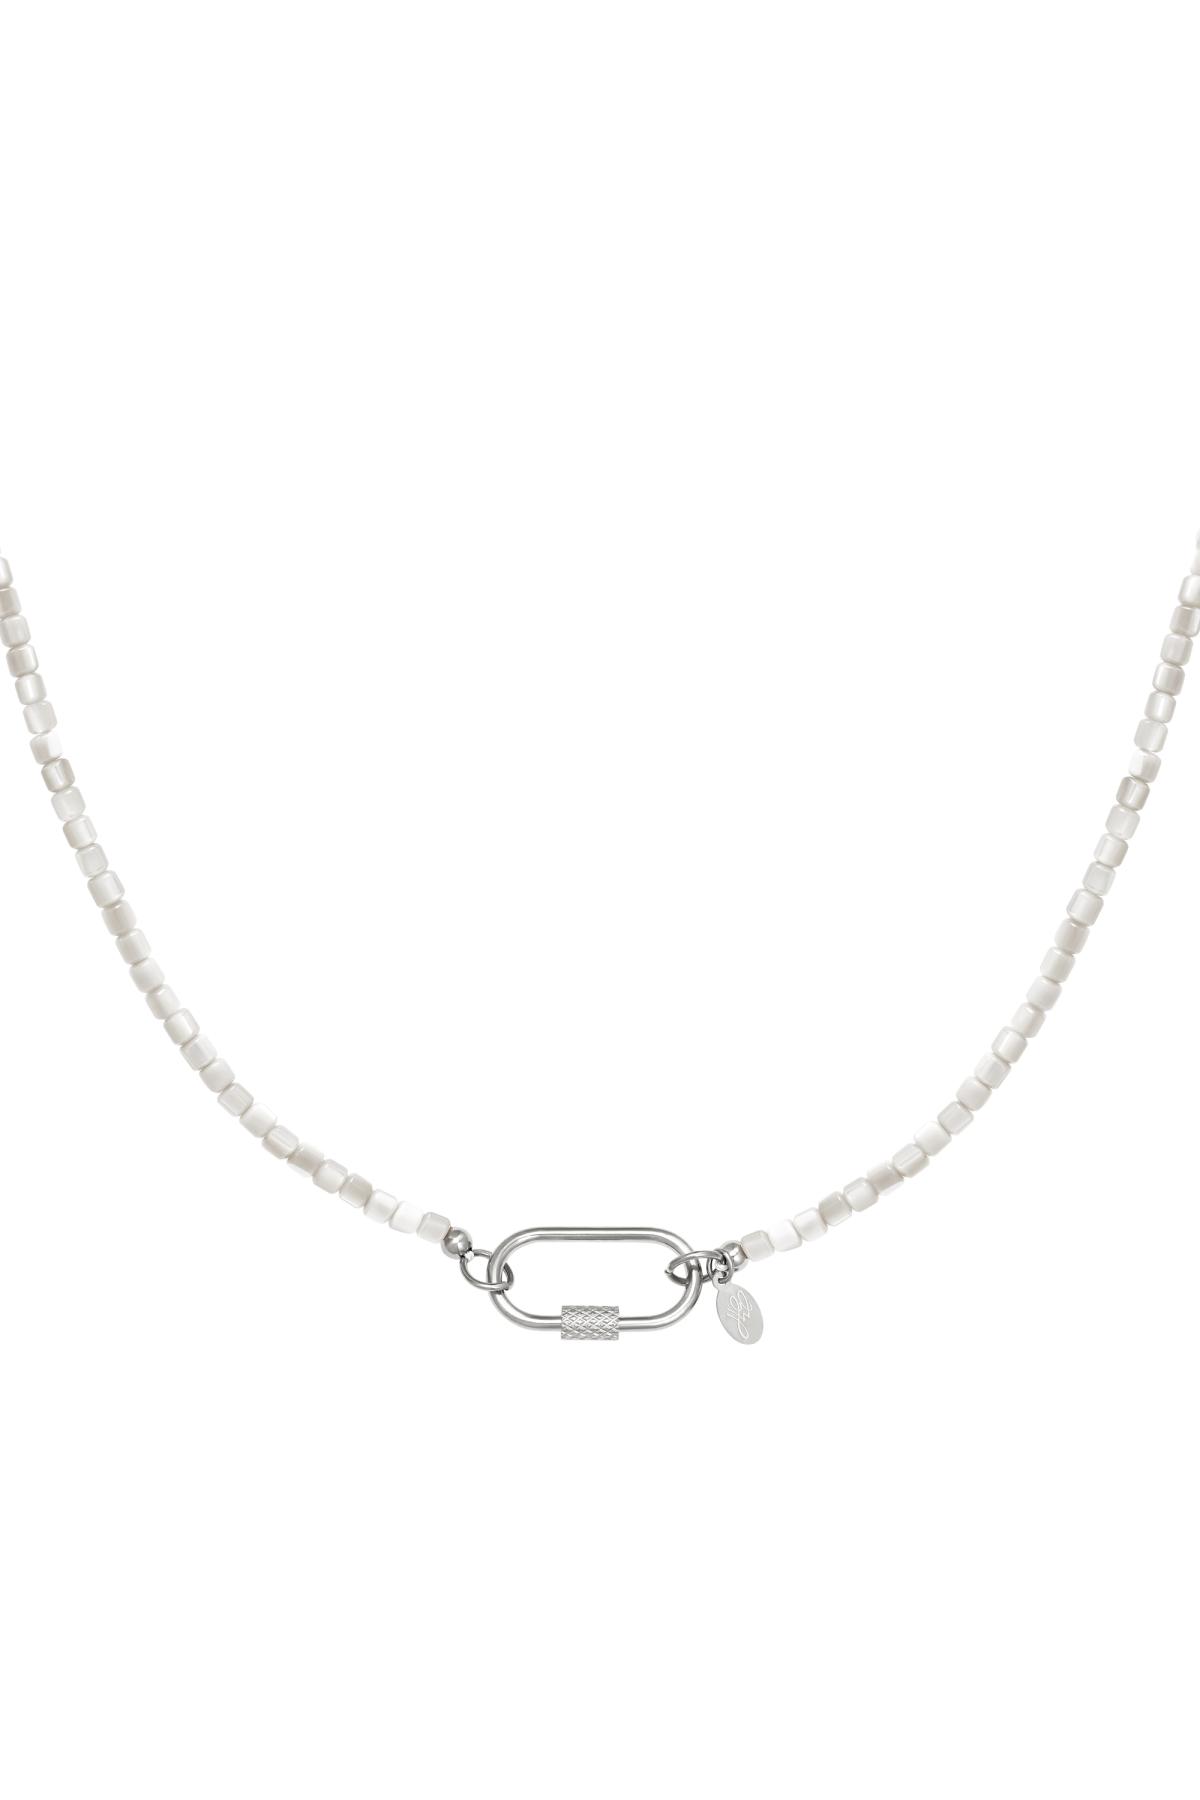 Bunte Halskette mit ovalem Verschluss Grau Edelstahl